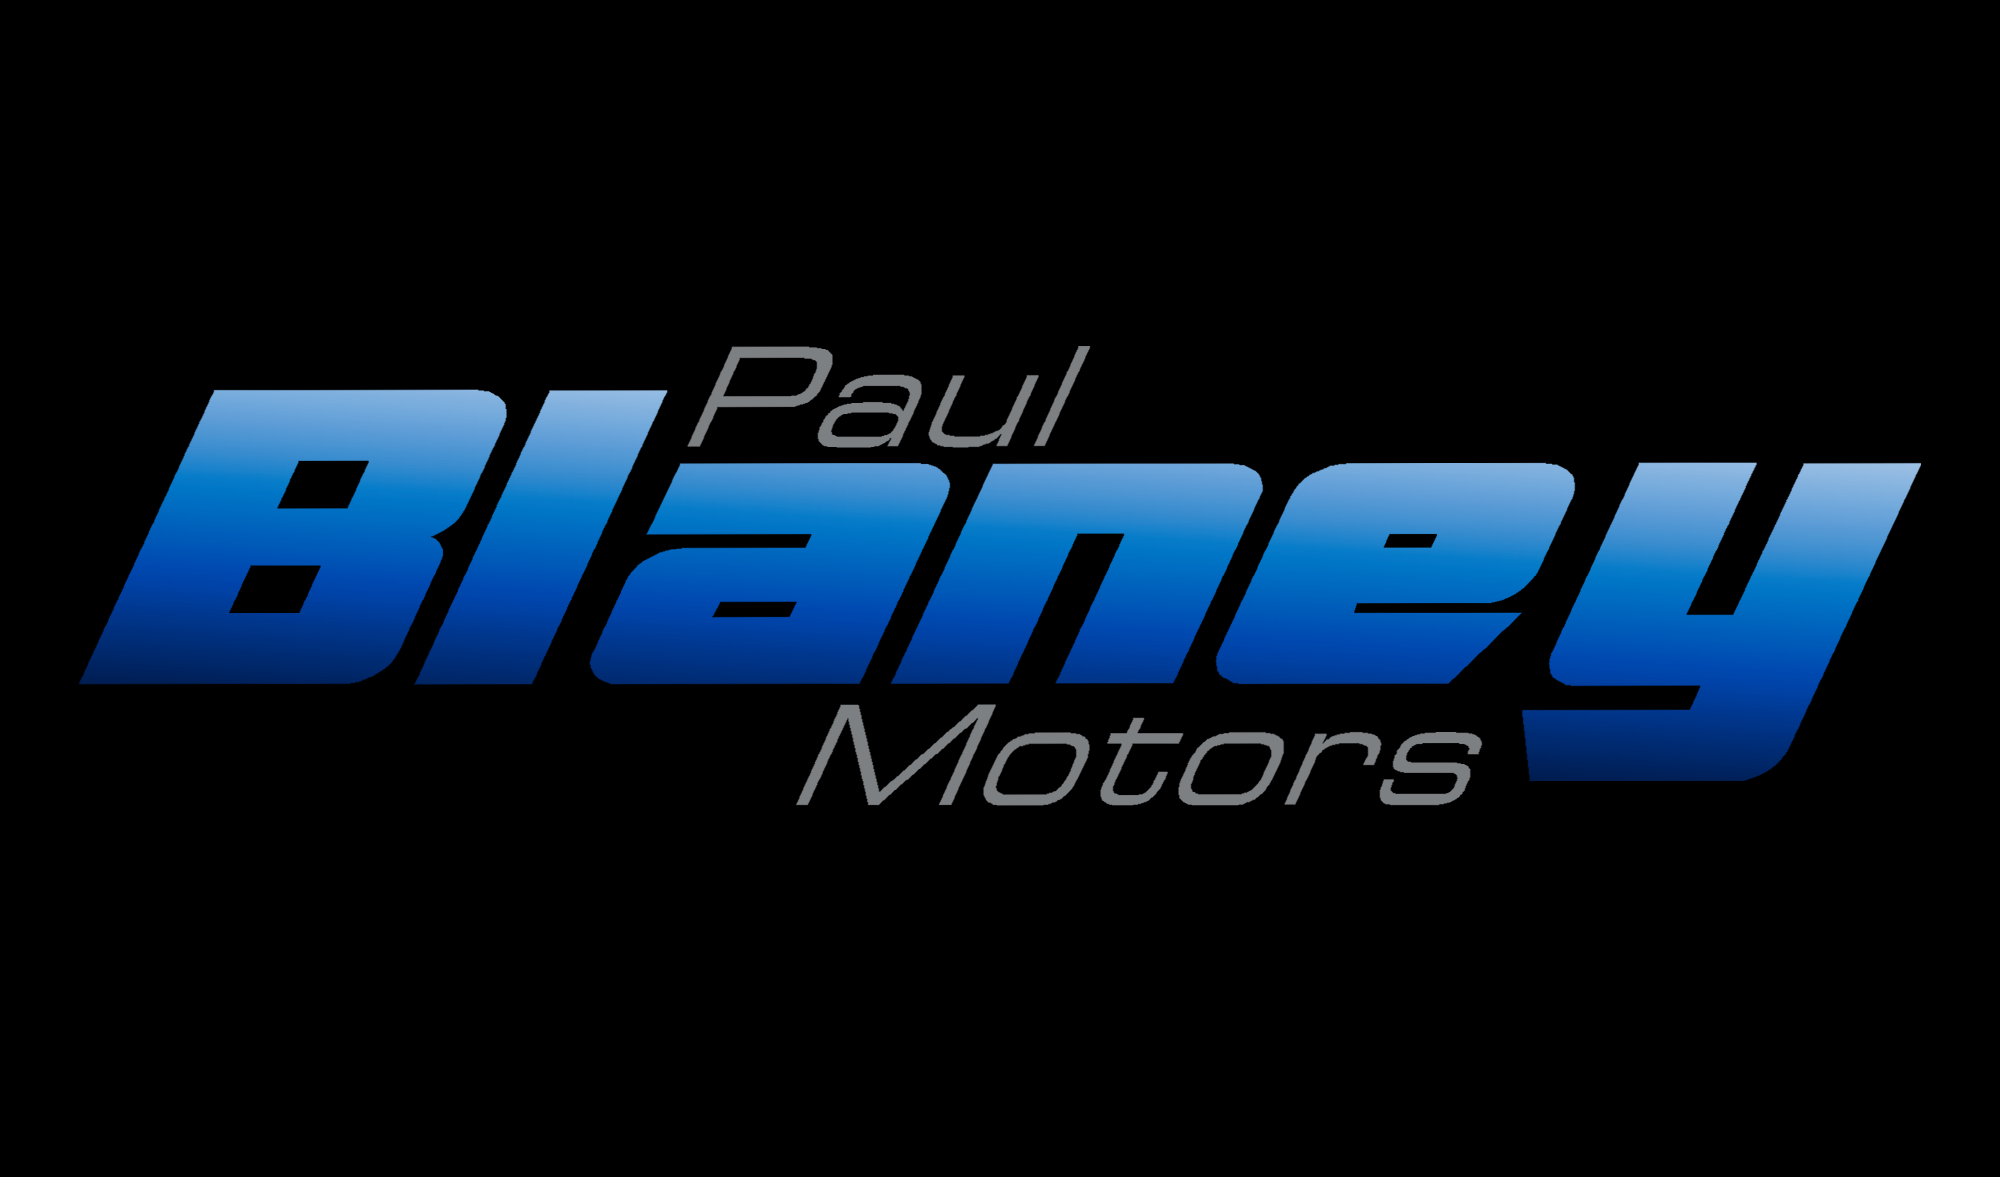 Paul Blaney Motors